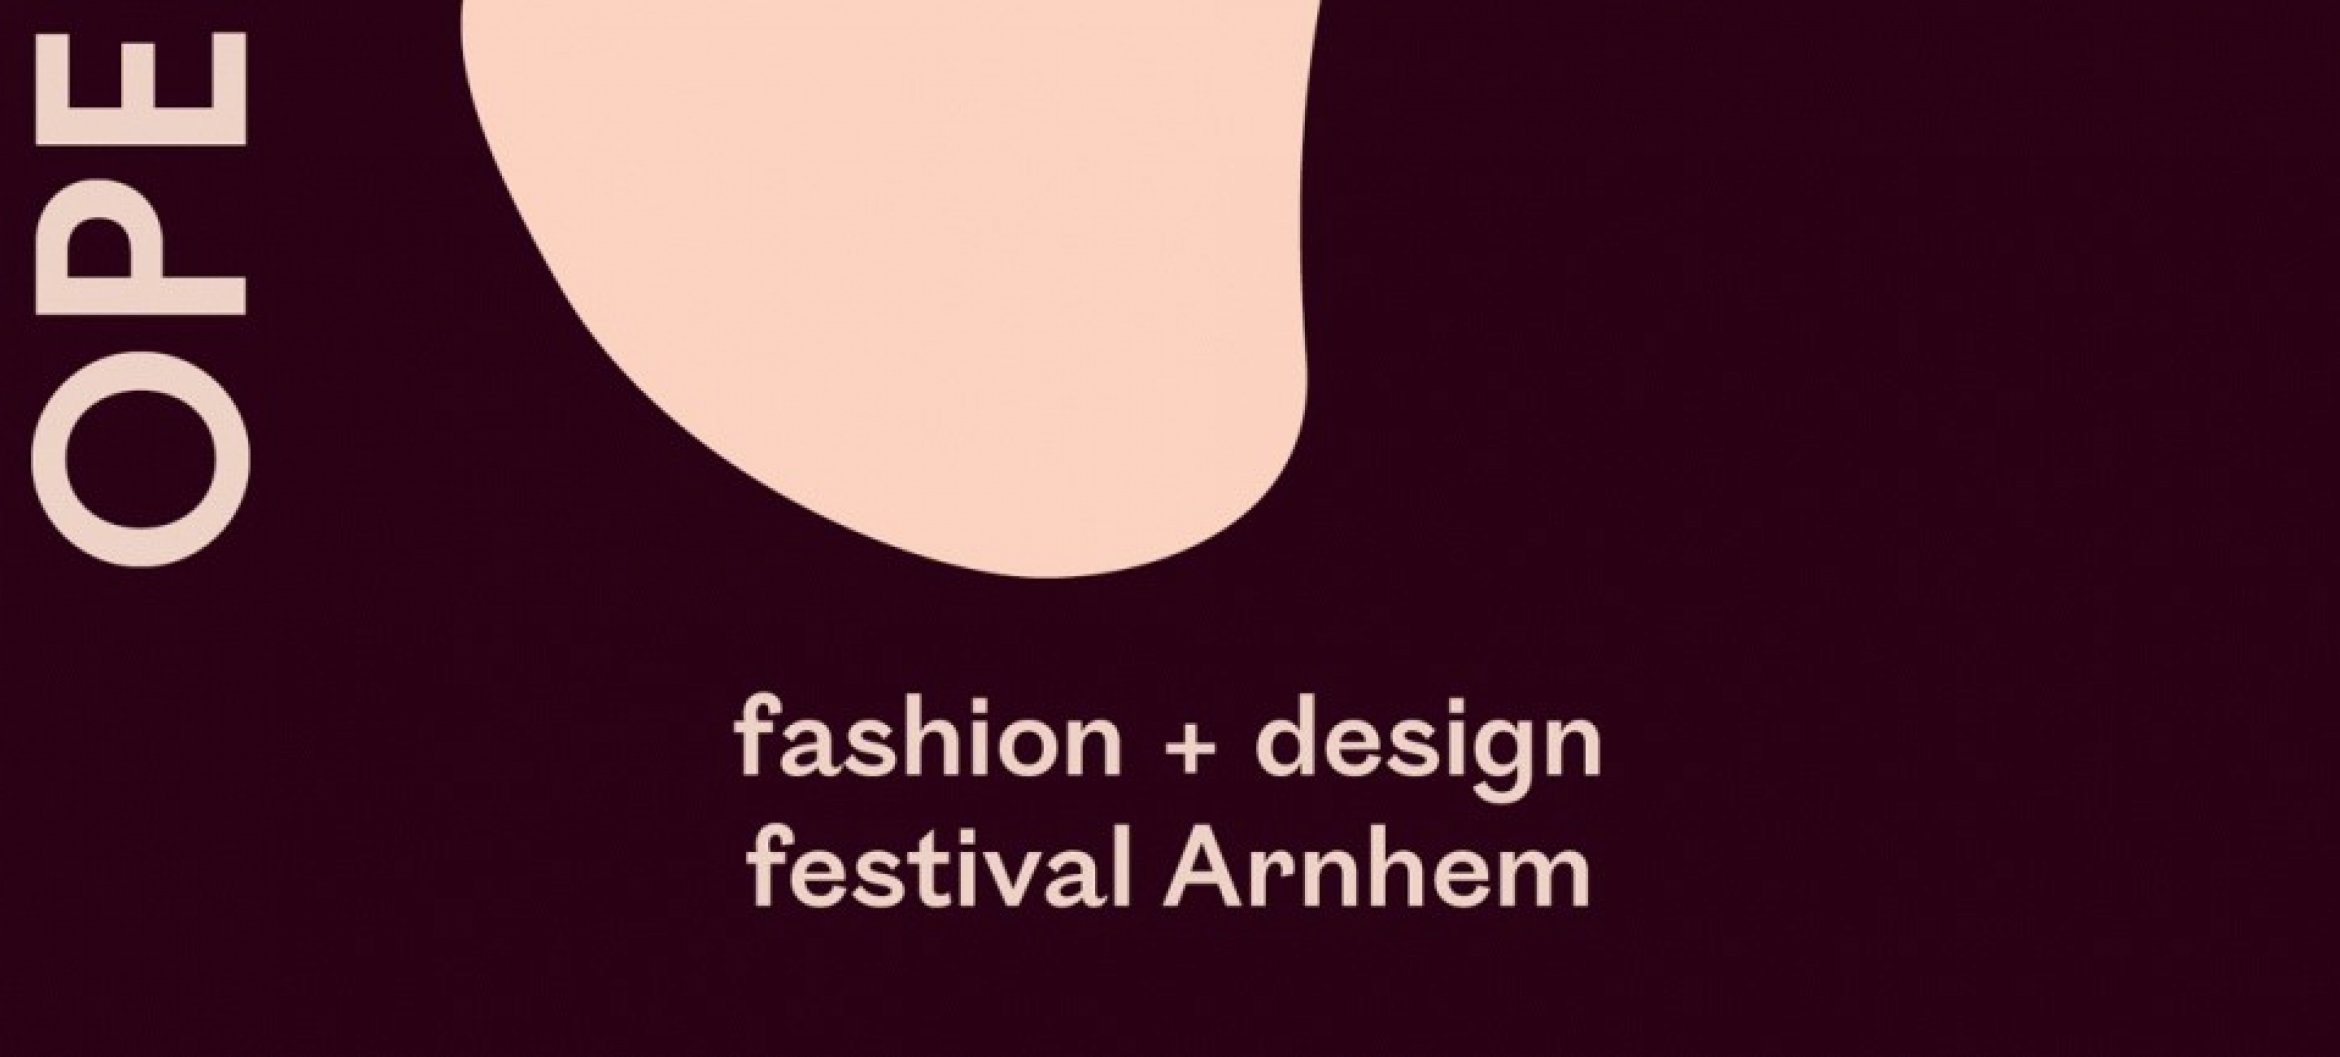 FDFA’22 is op zoek naar ontwerpers die in juni een installatie willen presenteren over hun visie op de waarden van mode en/of design.